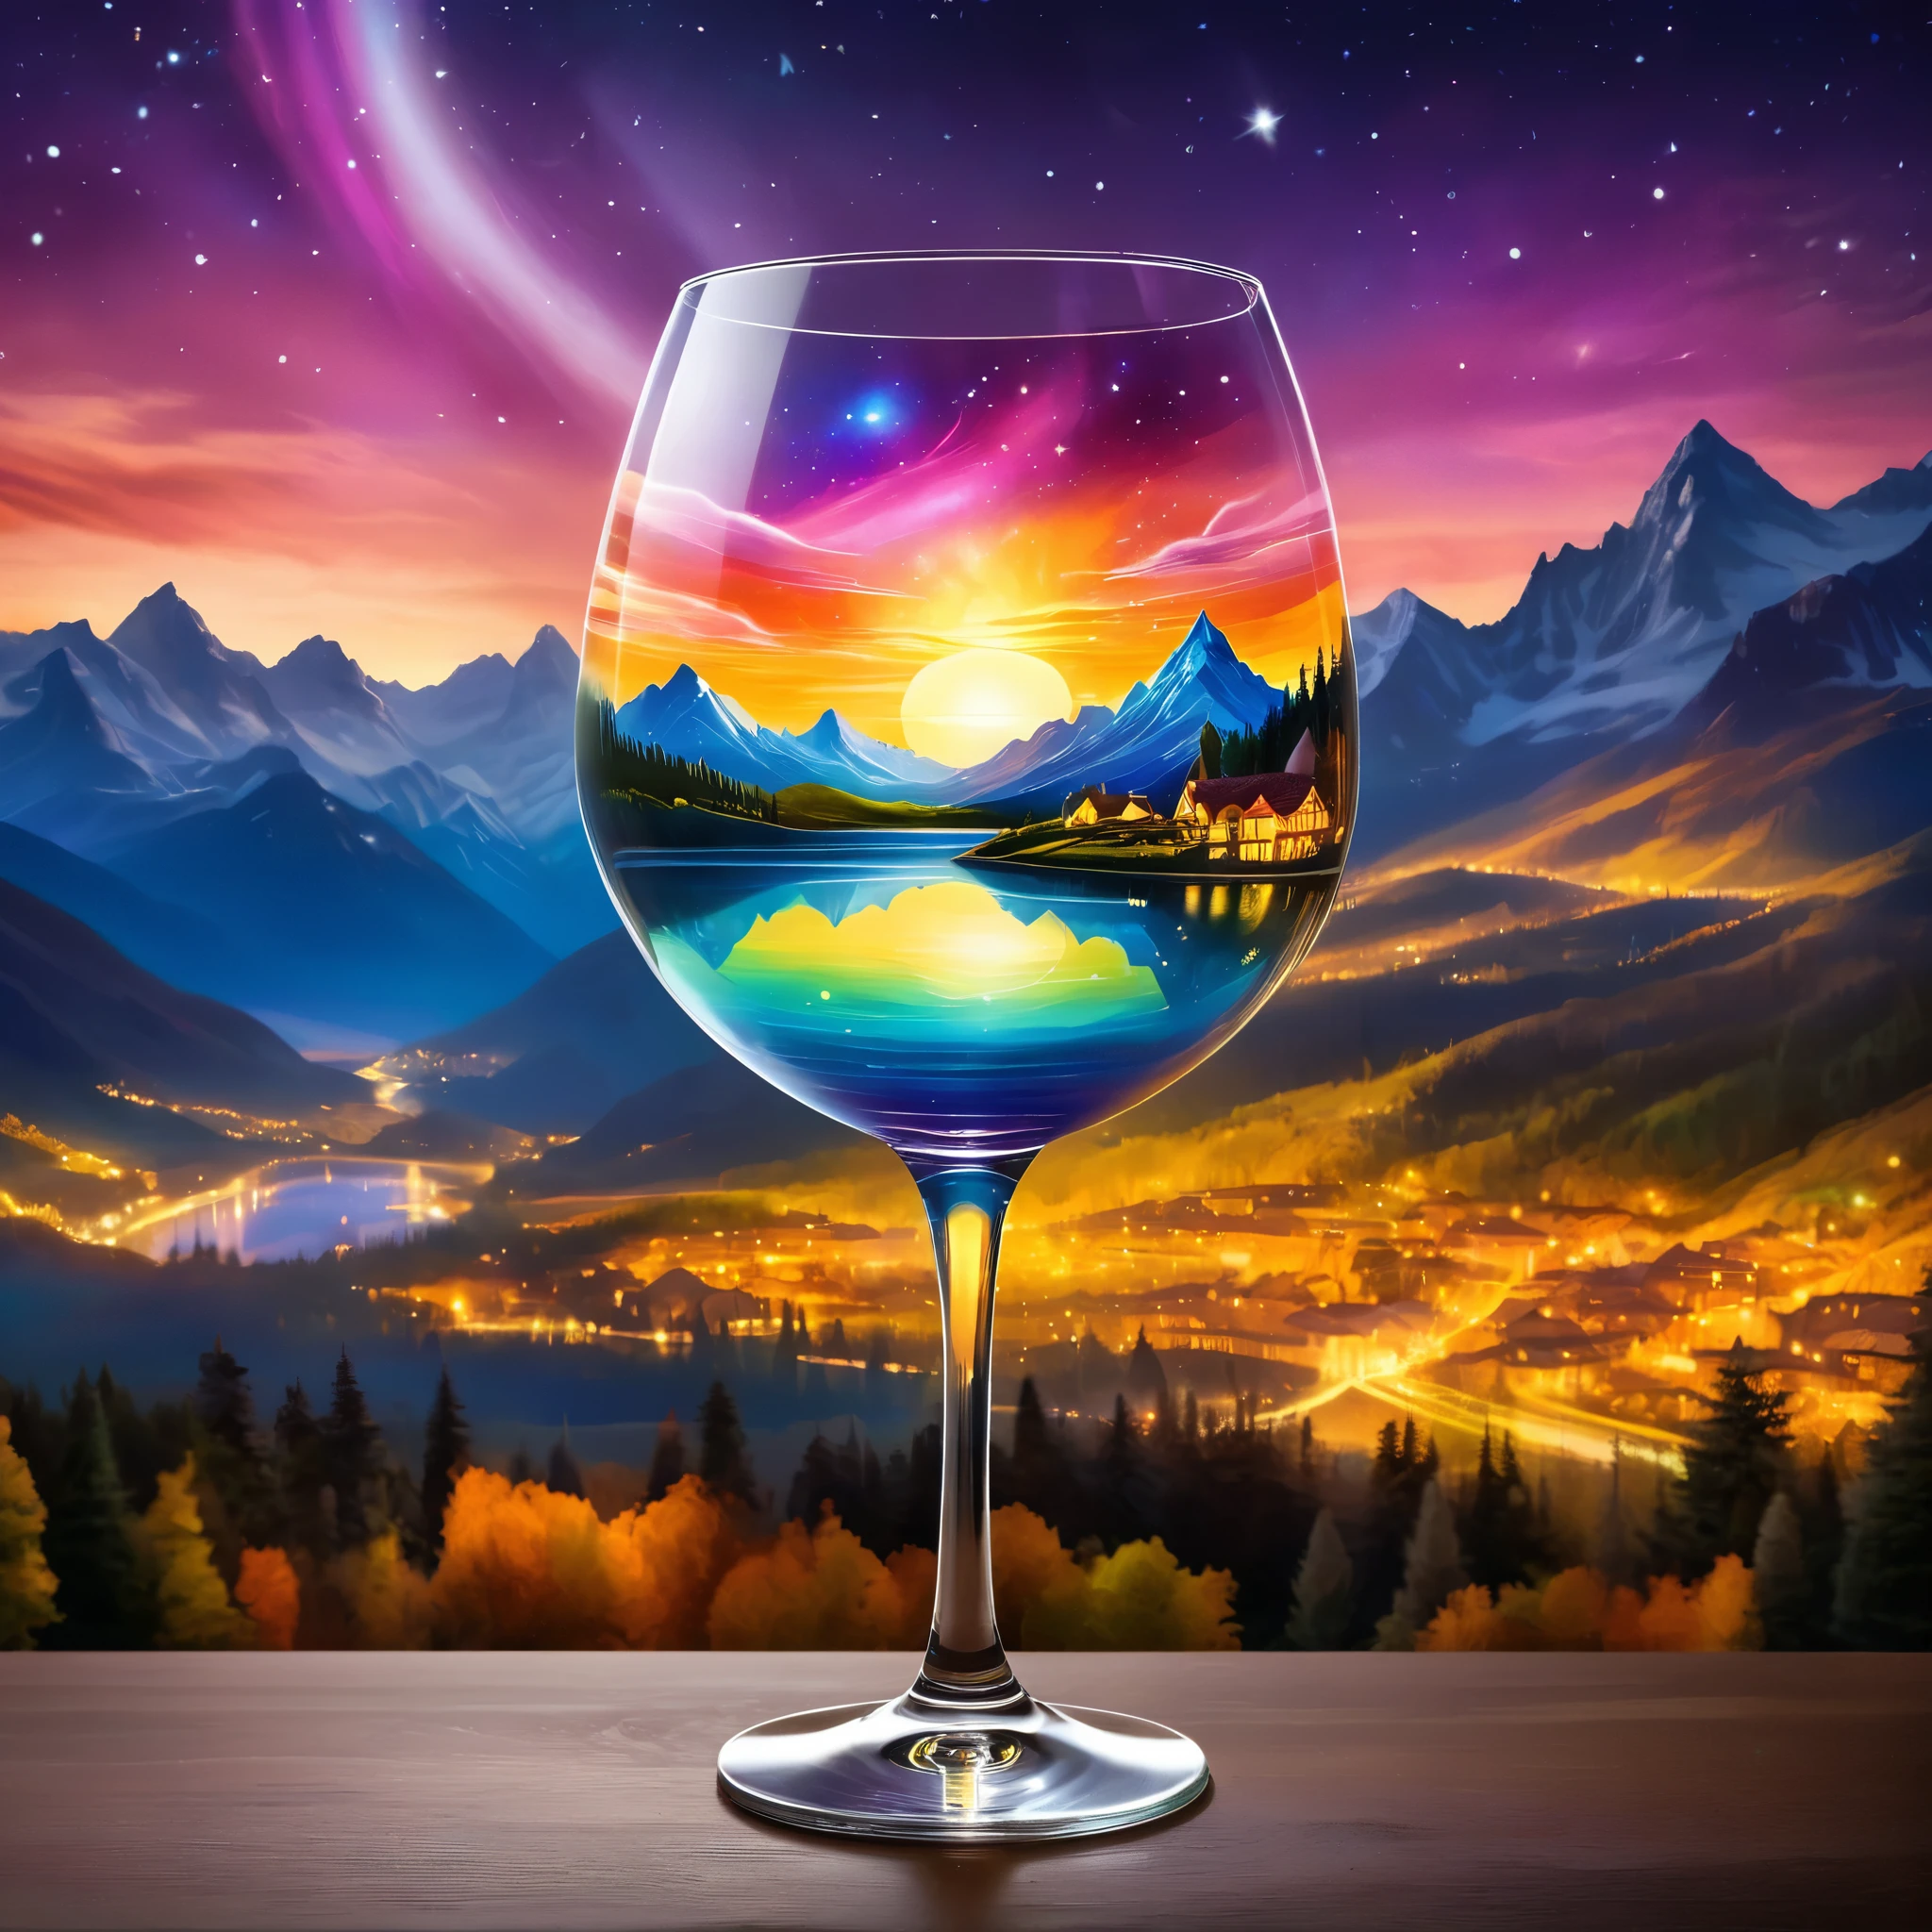 خلق مشهد سماوي داخل كأس النبيذ, تتميز بمناظر طبيعية سريالية مع الجبال وسماء الشفق القطبي. تتضمن الخلفية غروب الشمس المتوهج ومنظر المدينة. يجب أن يكون الأسلوب خياليًا مع عناصر أثيرية. صورة واقعية للغاية, ألوان نابضة بالحياة للغاية, 16 ك